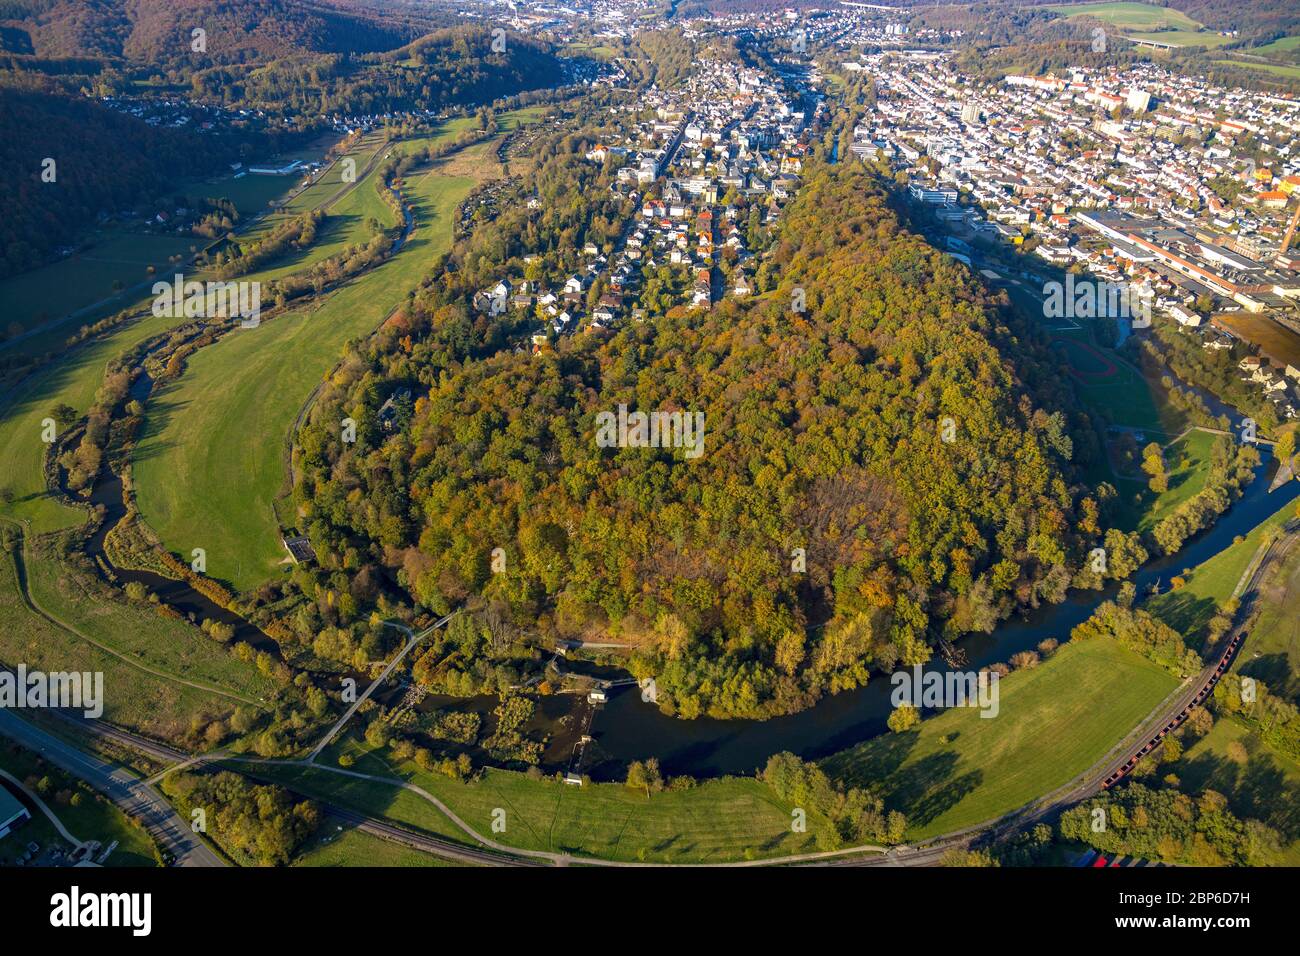 Vue aérienne, vue sur la ville de Wennigloh dans les couleurs d'automne boisées, entourées par la forêt d'Eichholz et la rivière Ruhr, Arnsberg, pays aigre, Rhénanie-du-Nord-Westphalie, Allemagne Banque D'Images